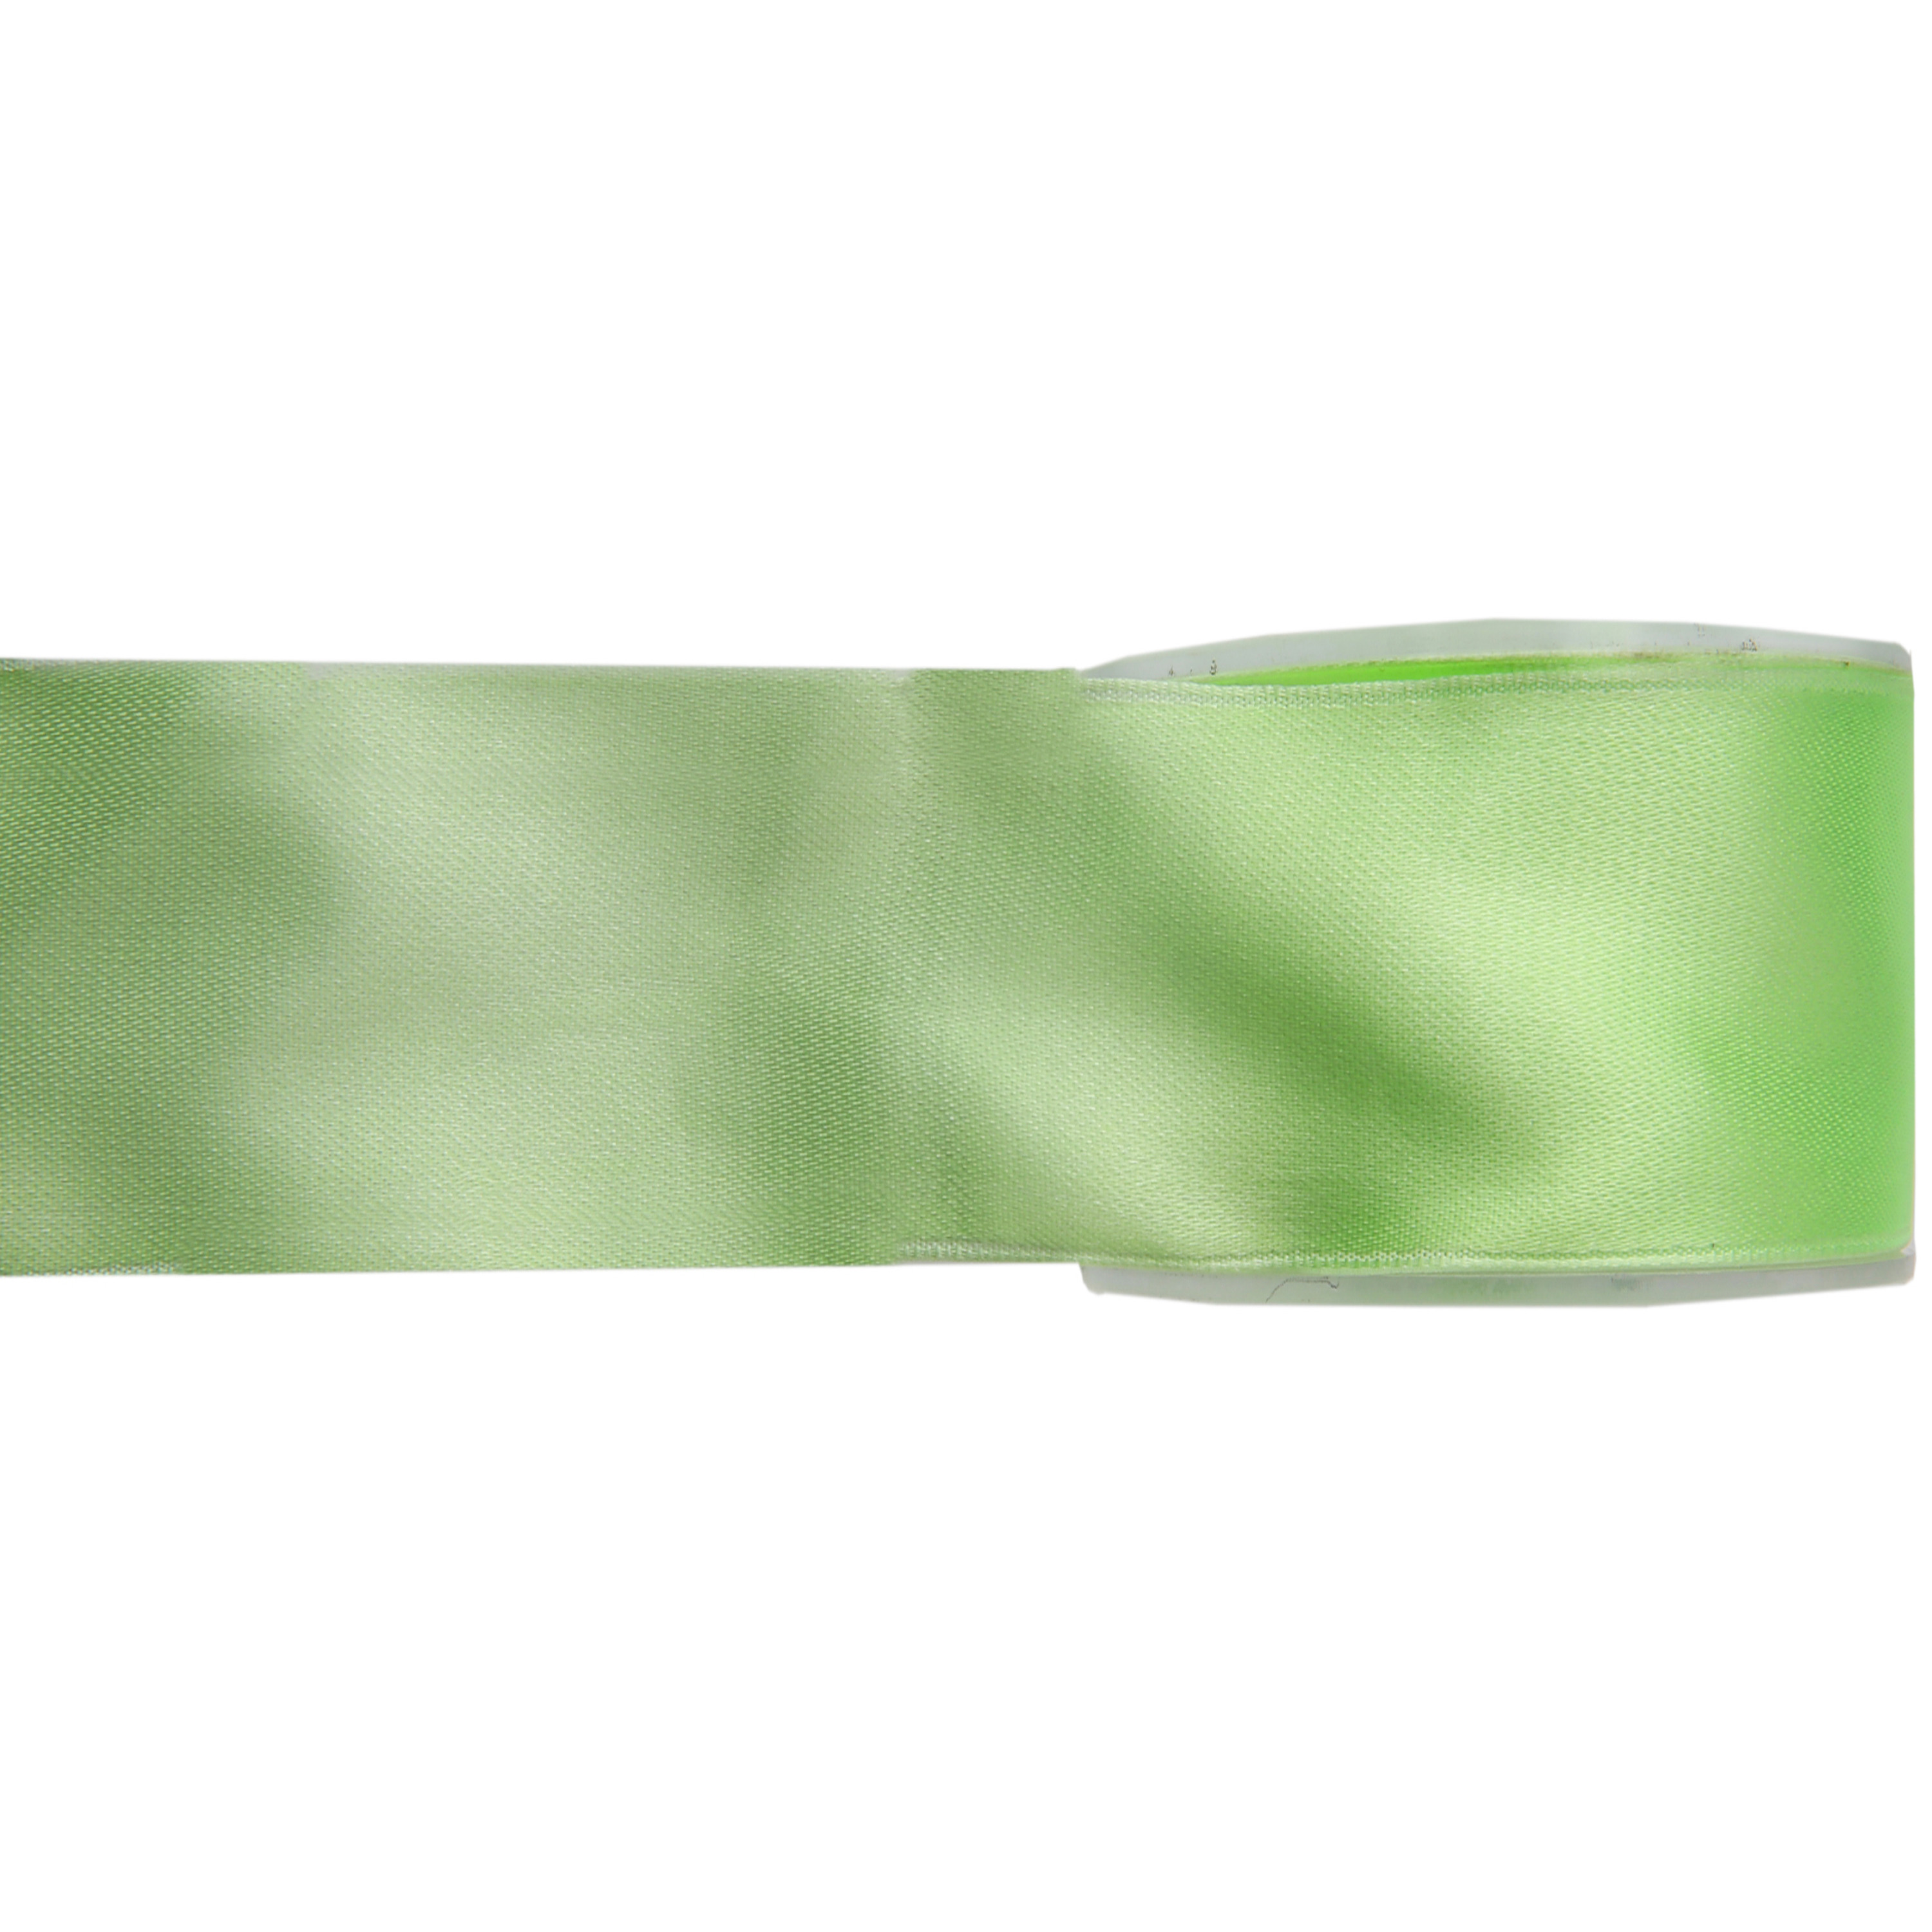 1x Hobby-decoratie groene satijnen sierlinten 2,5 cm-25 mm x 25 meter